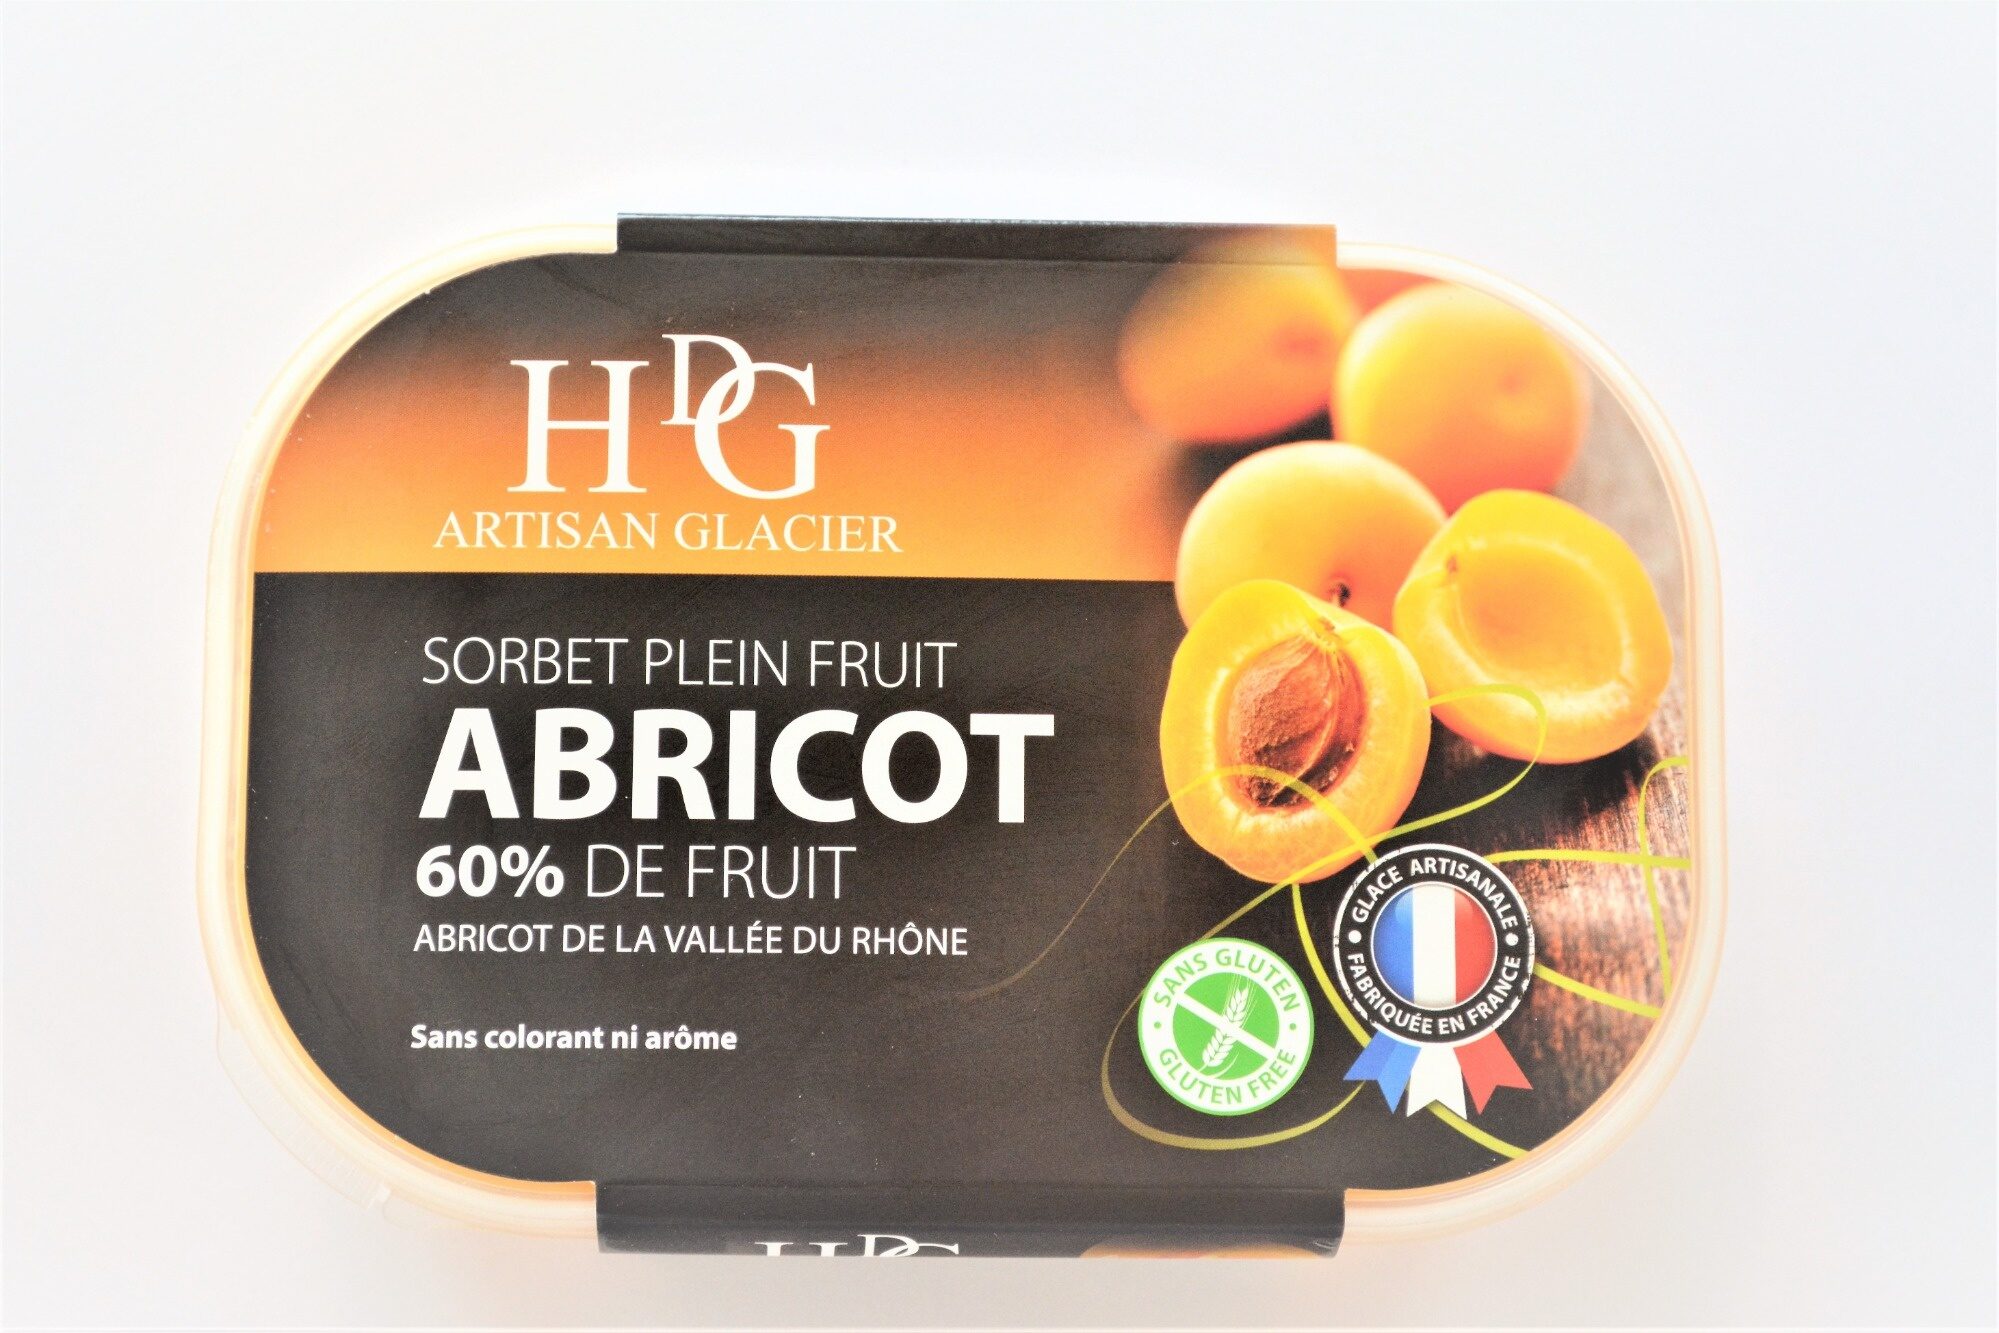 Sorbet plein fruit ABRICOT, 60% de fruit - Product - fr